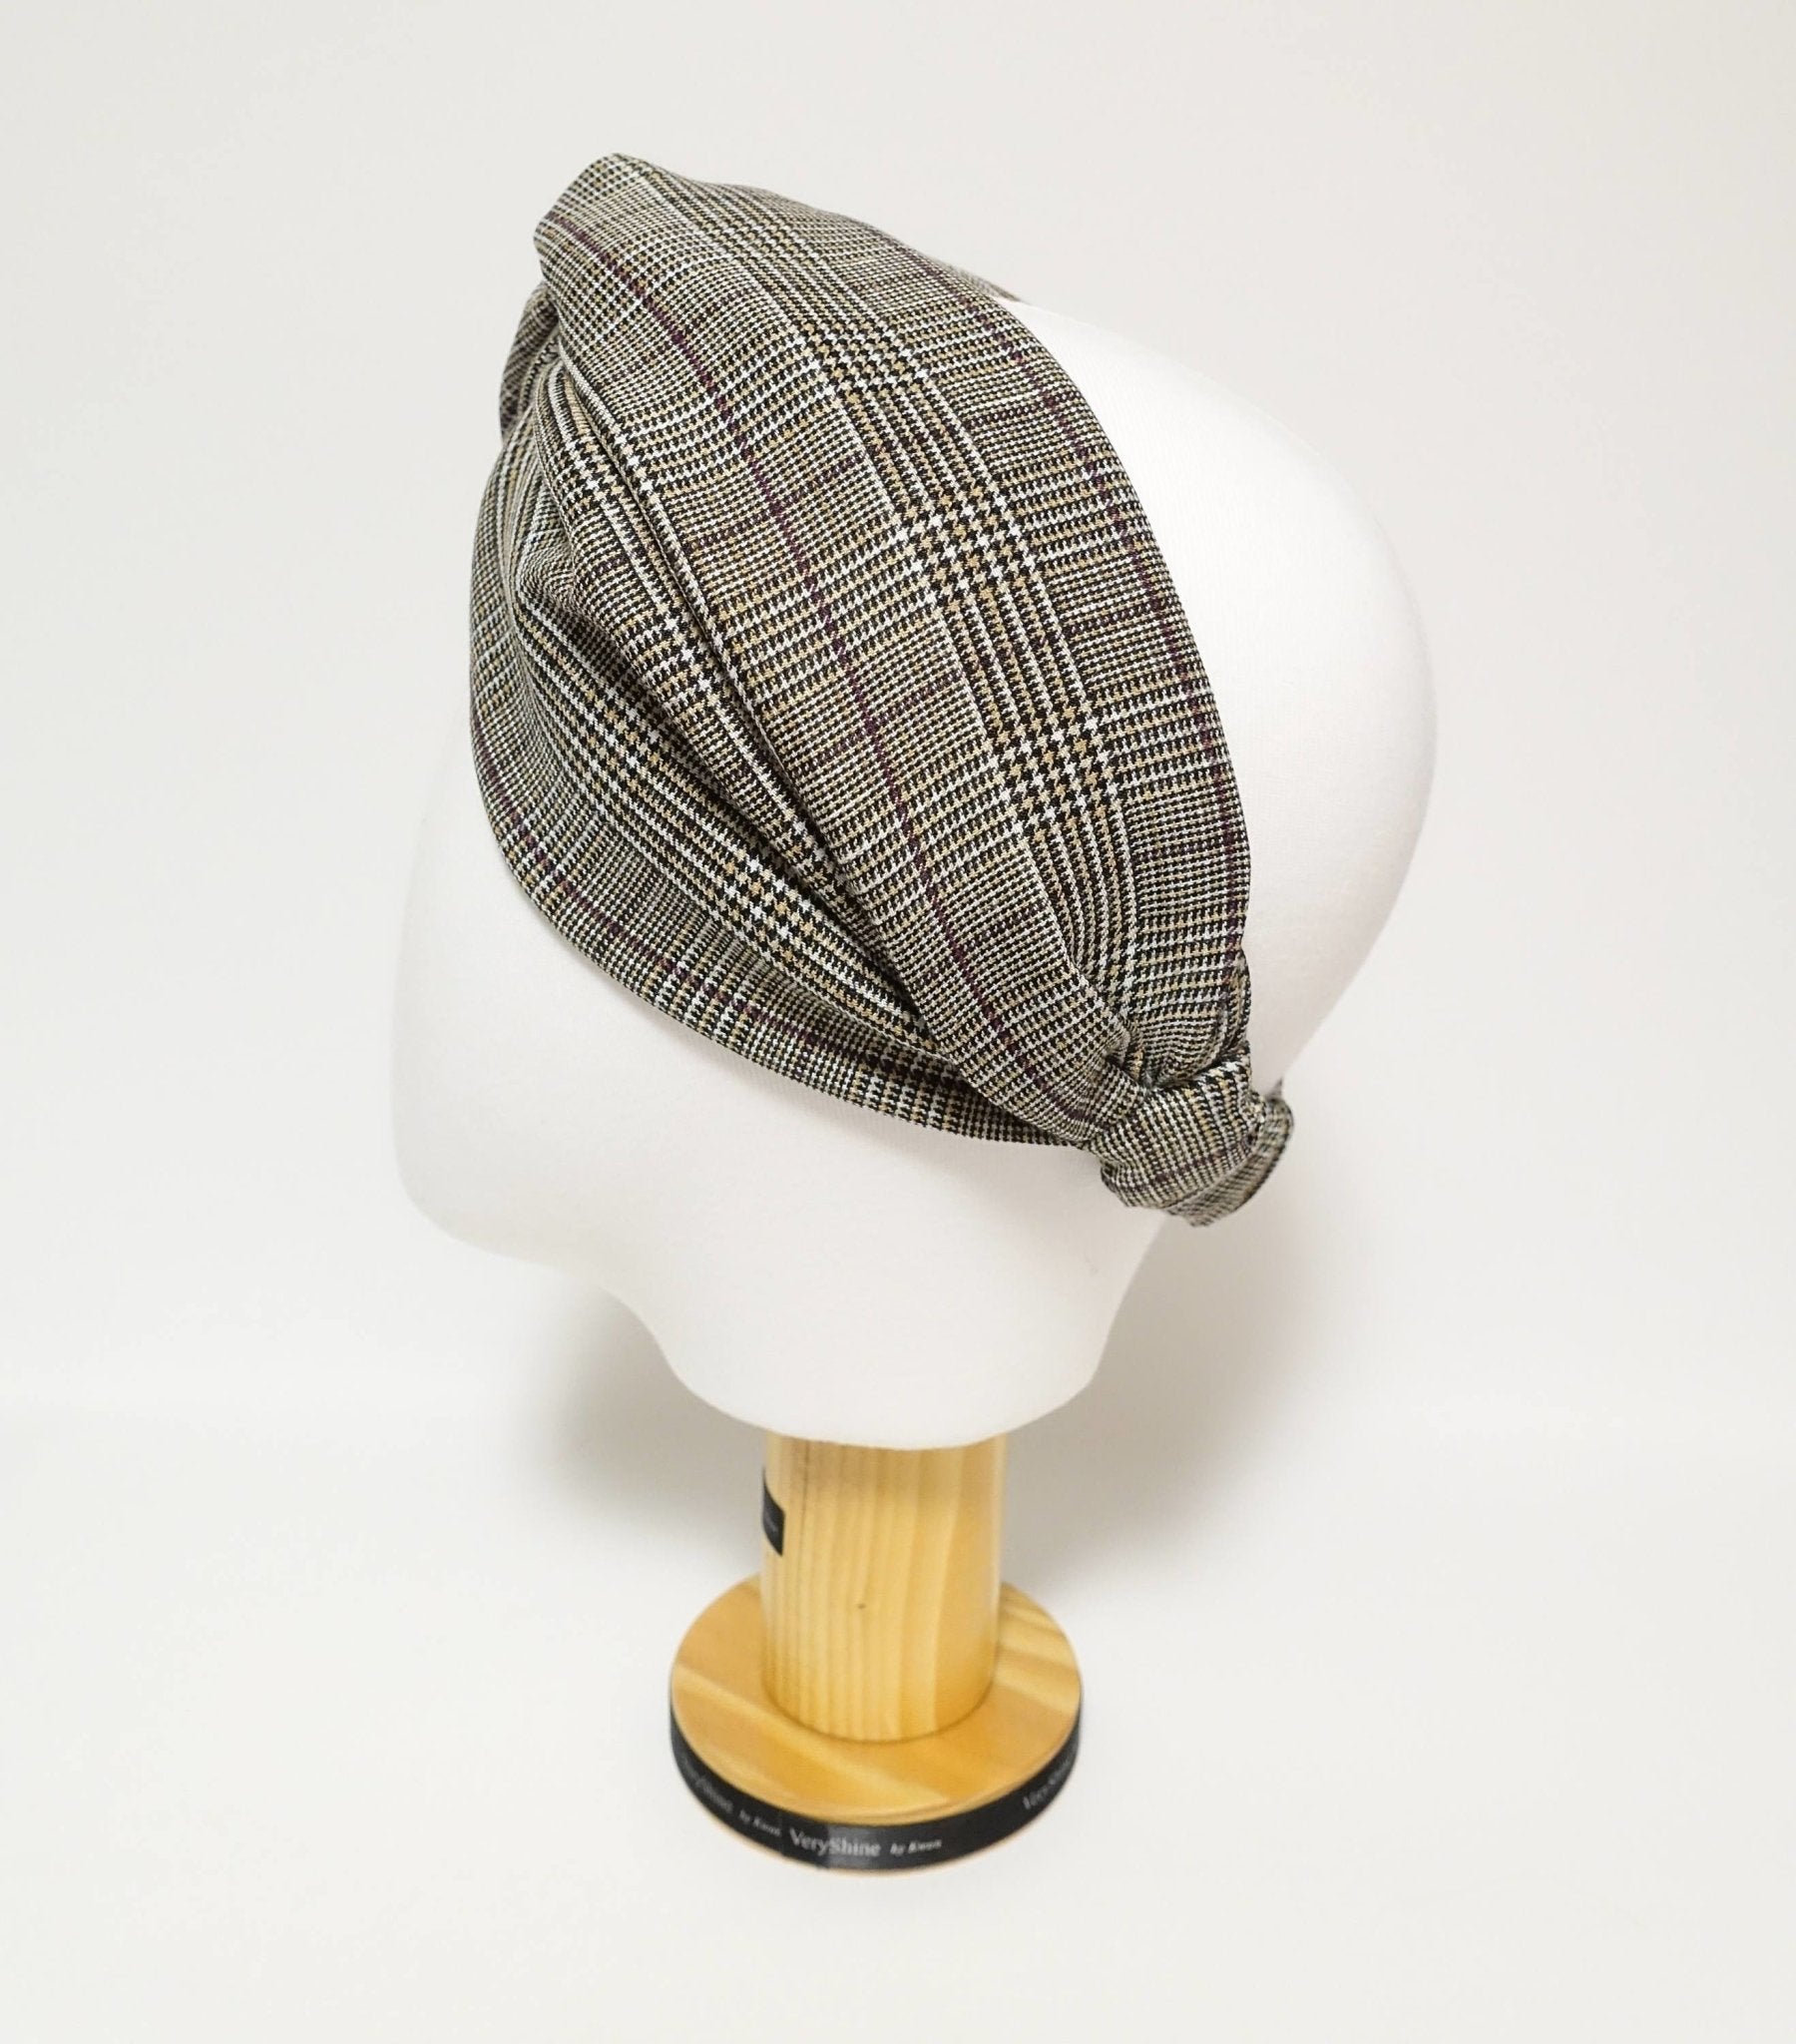 VeryShine plaid check pattern front x twist fashion headband hair turban